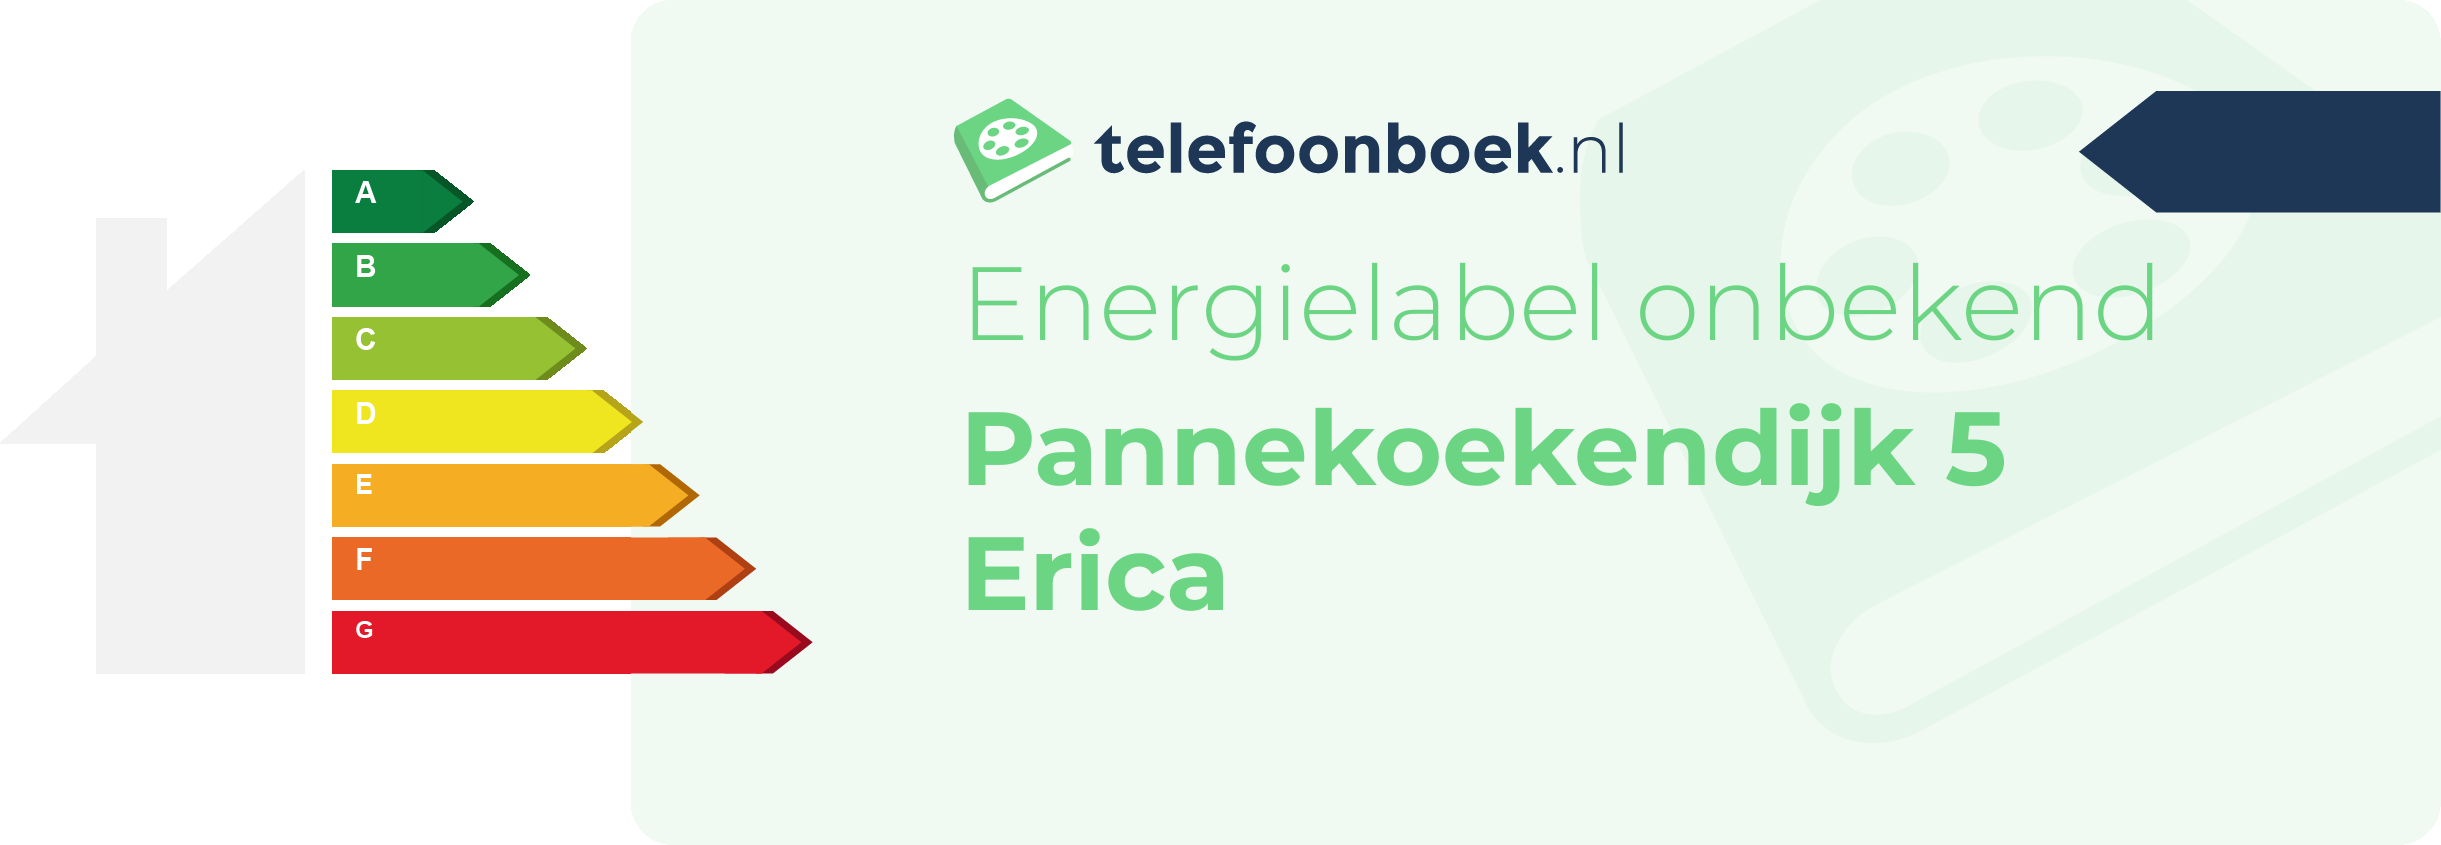 Energielabel Pannekoekendijk 5 Erica